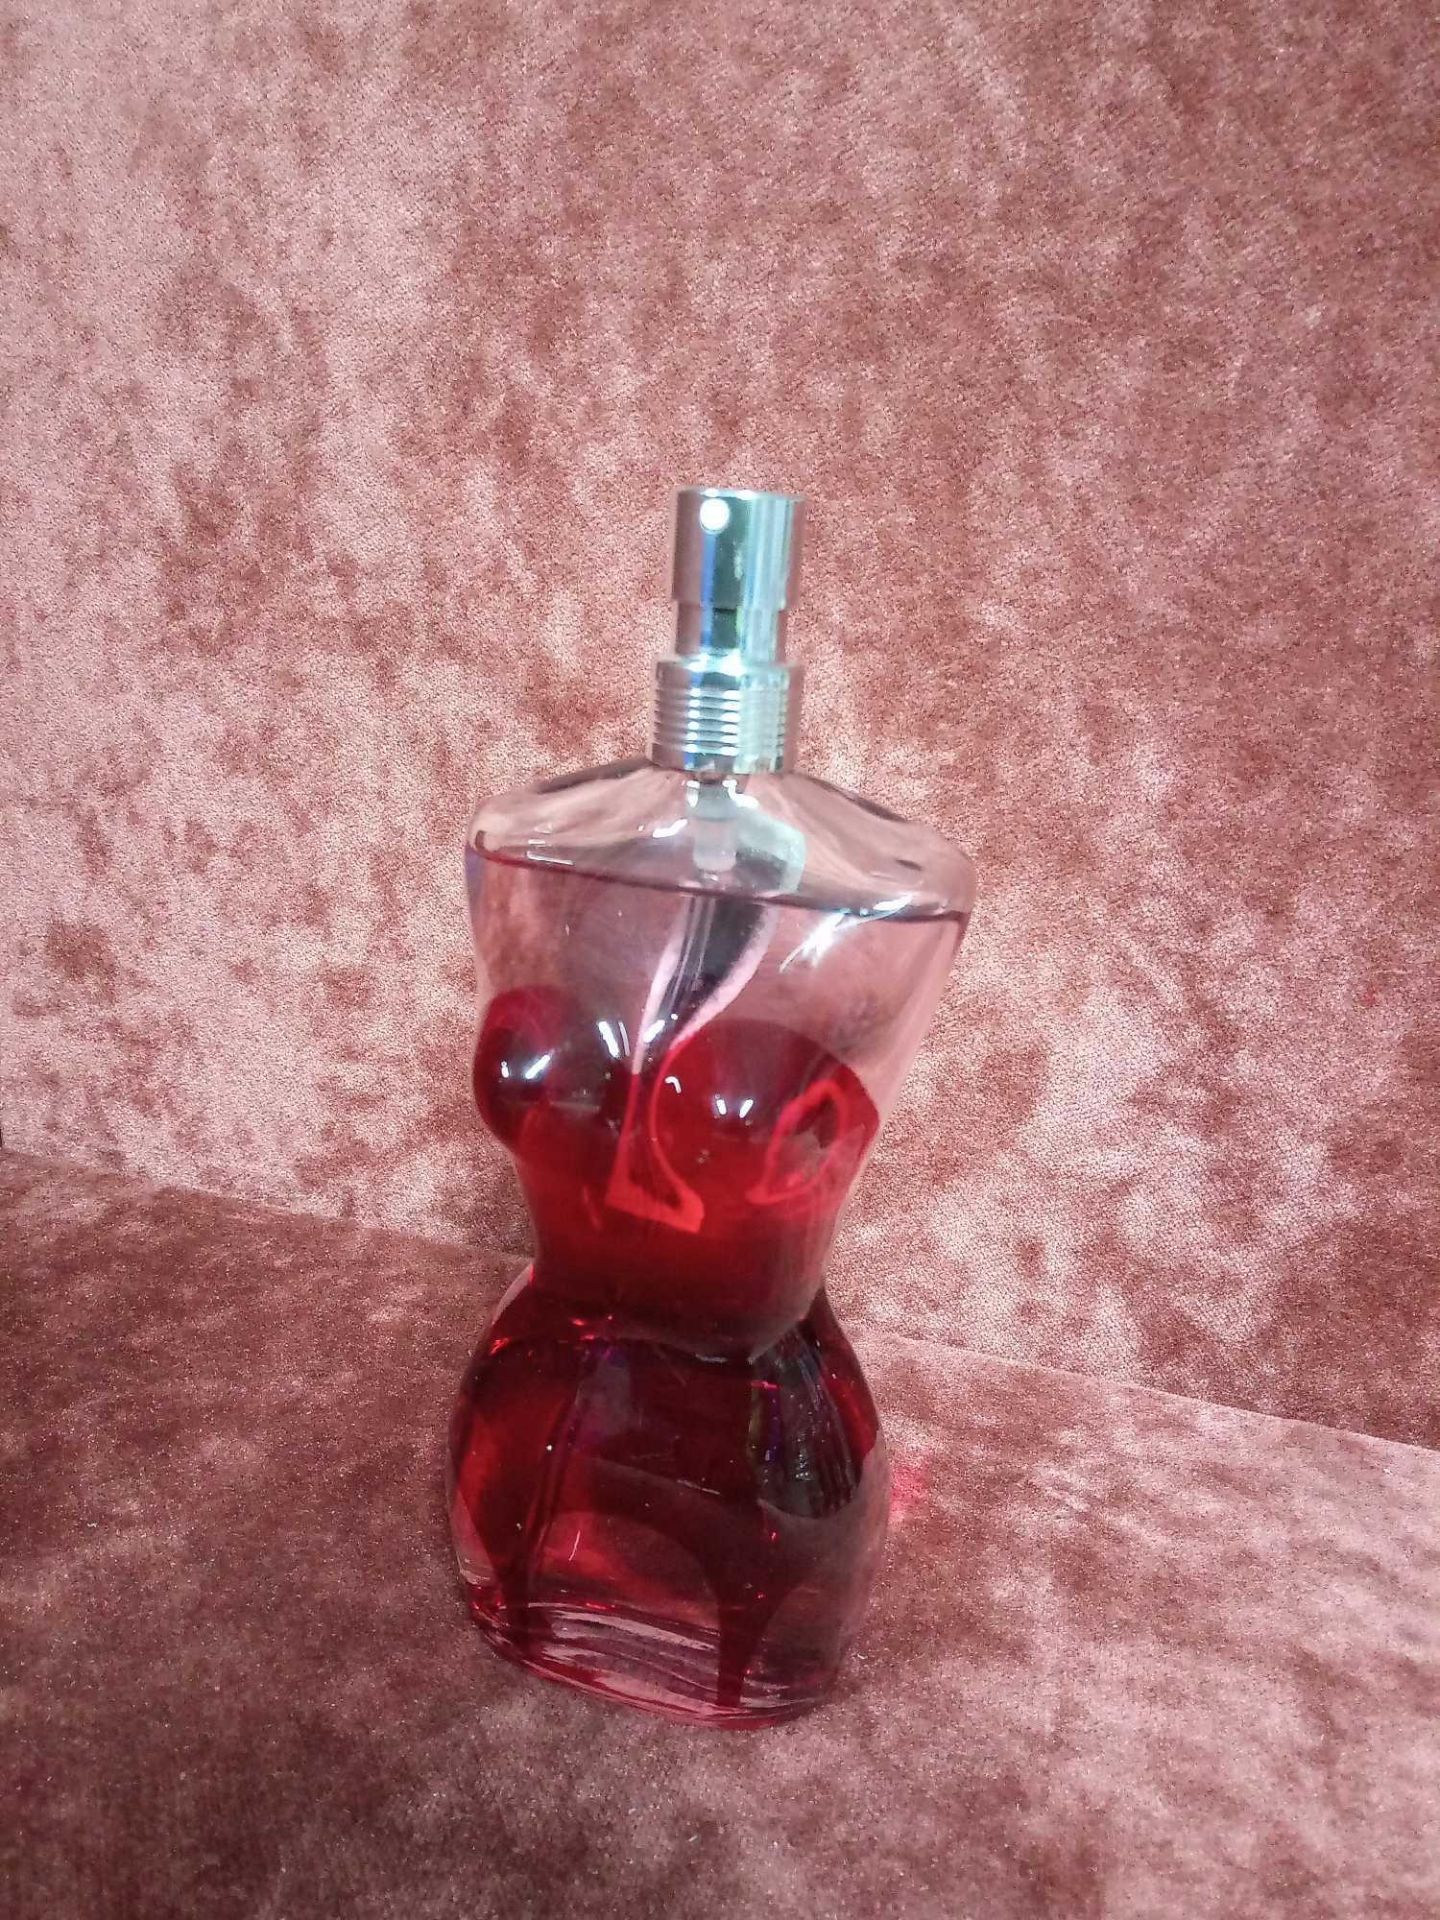 RRP £80 Unboxed 100Ml Tester Bottle Of Jean Paul Gaultier Classique Eau De Parfum Ex Display - Image 2 of 2